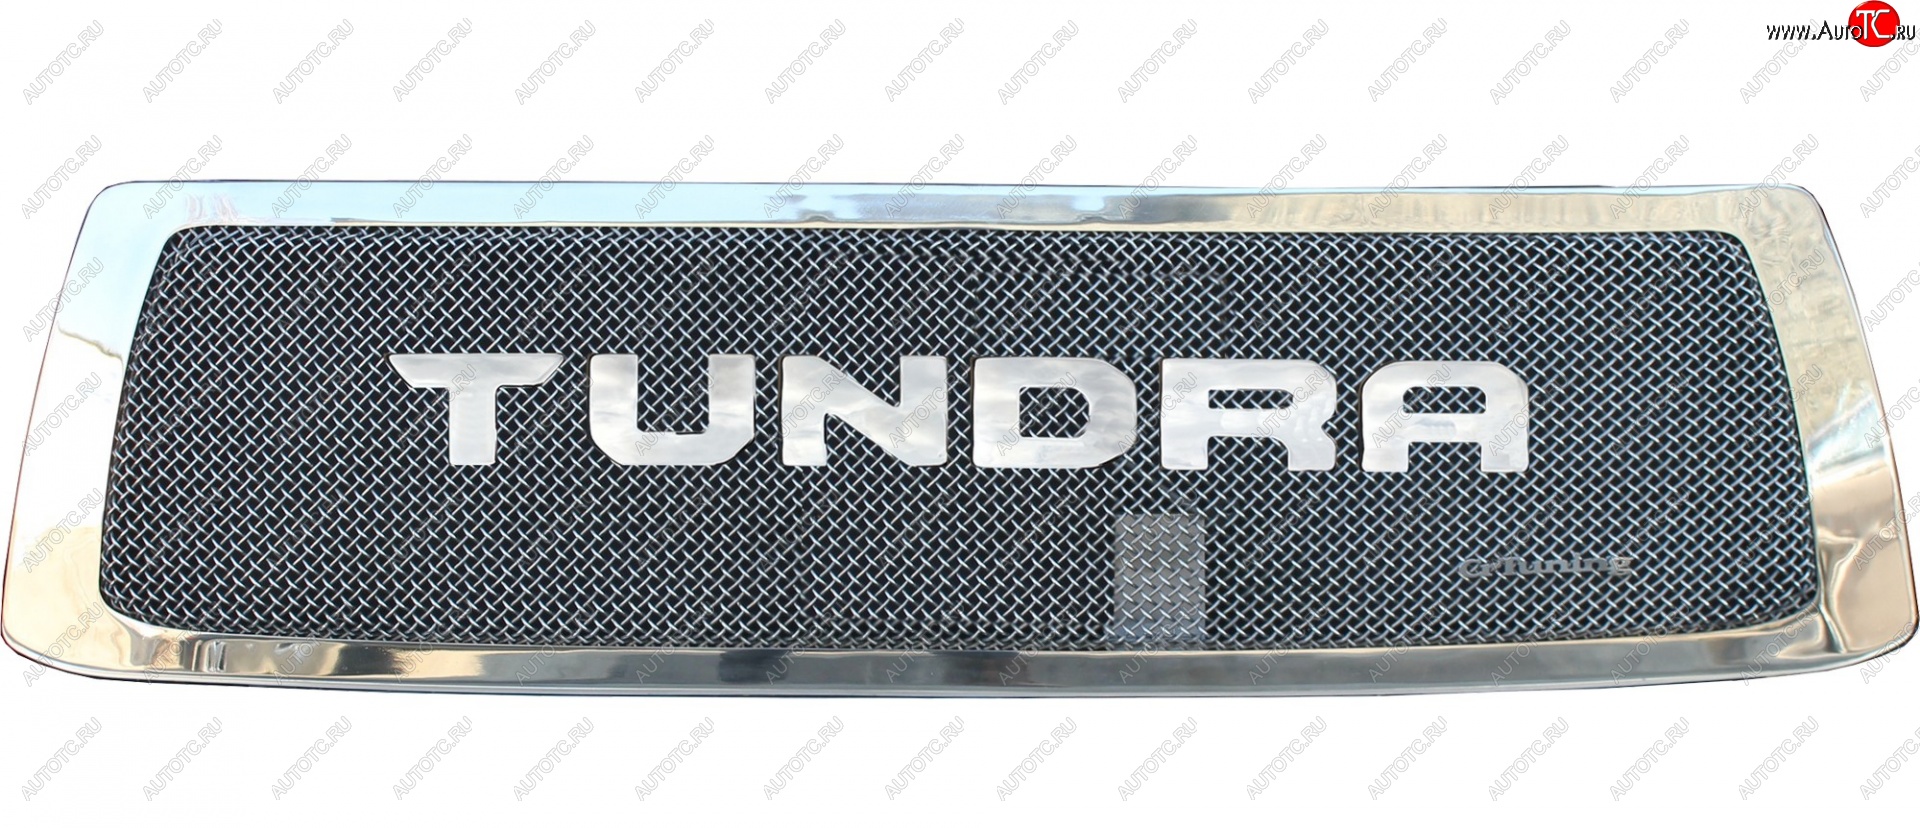 16 429 р. Вставка в решетку радиатора CrTuning  Toyota Tundra  XK50 (2007-2009) (С надписью TUNDRA)  с доставкой в г. Калуга